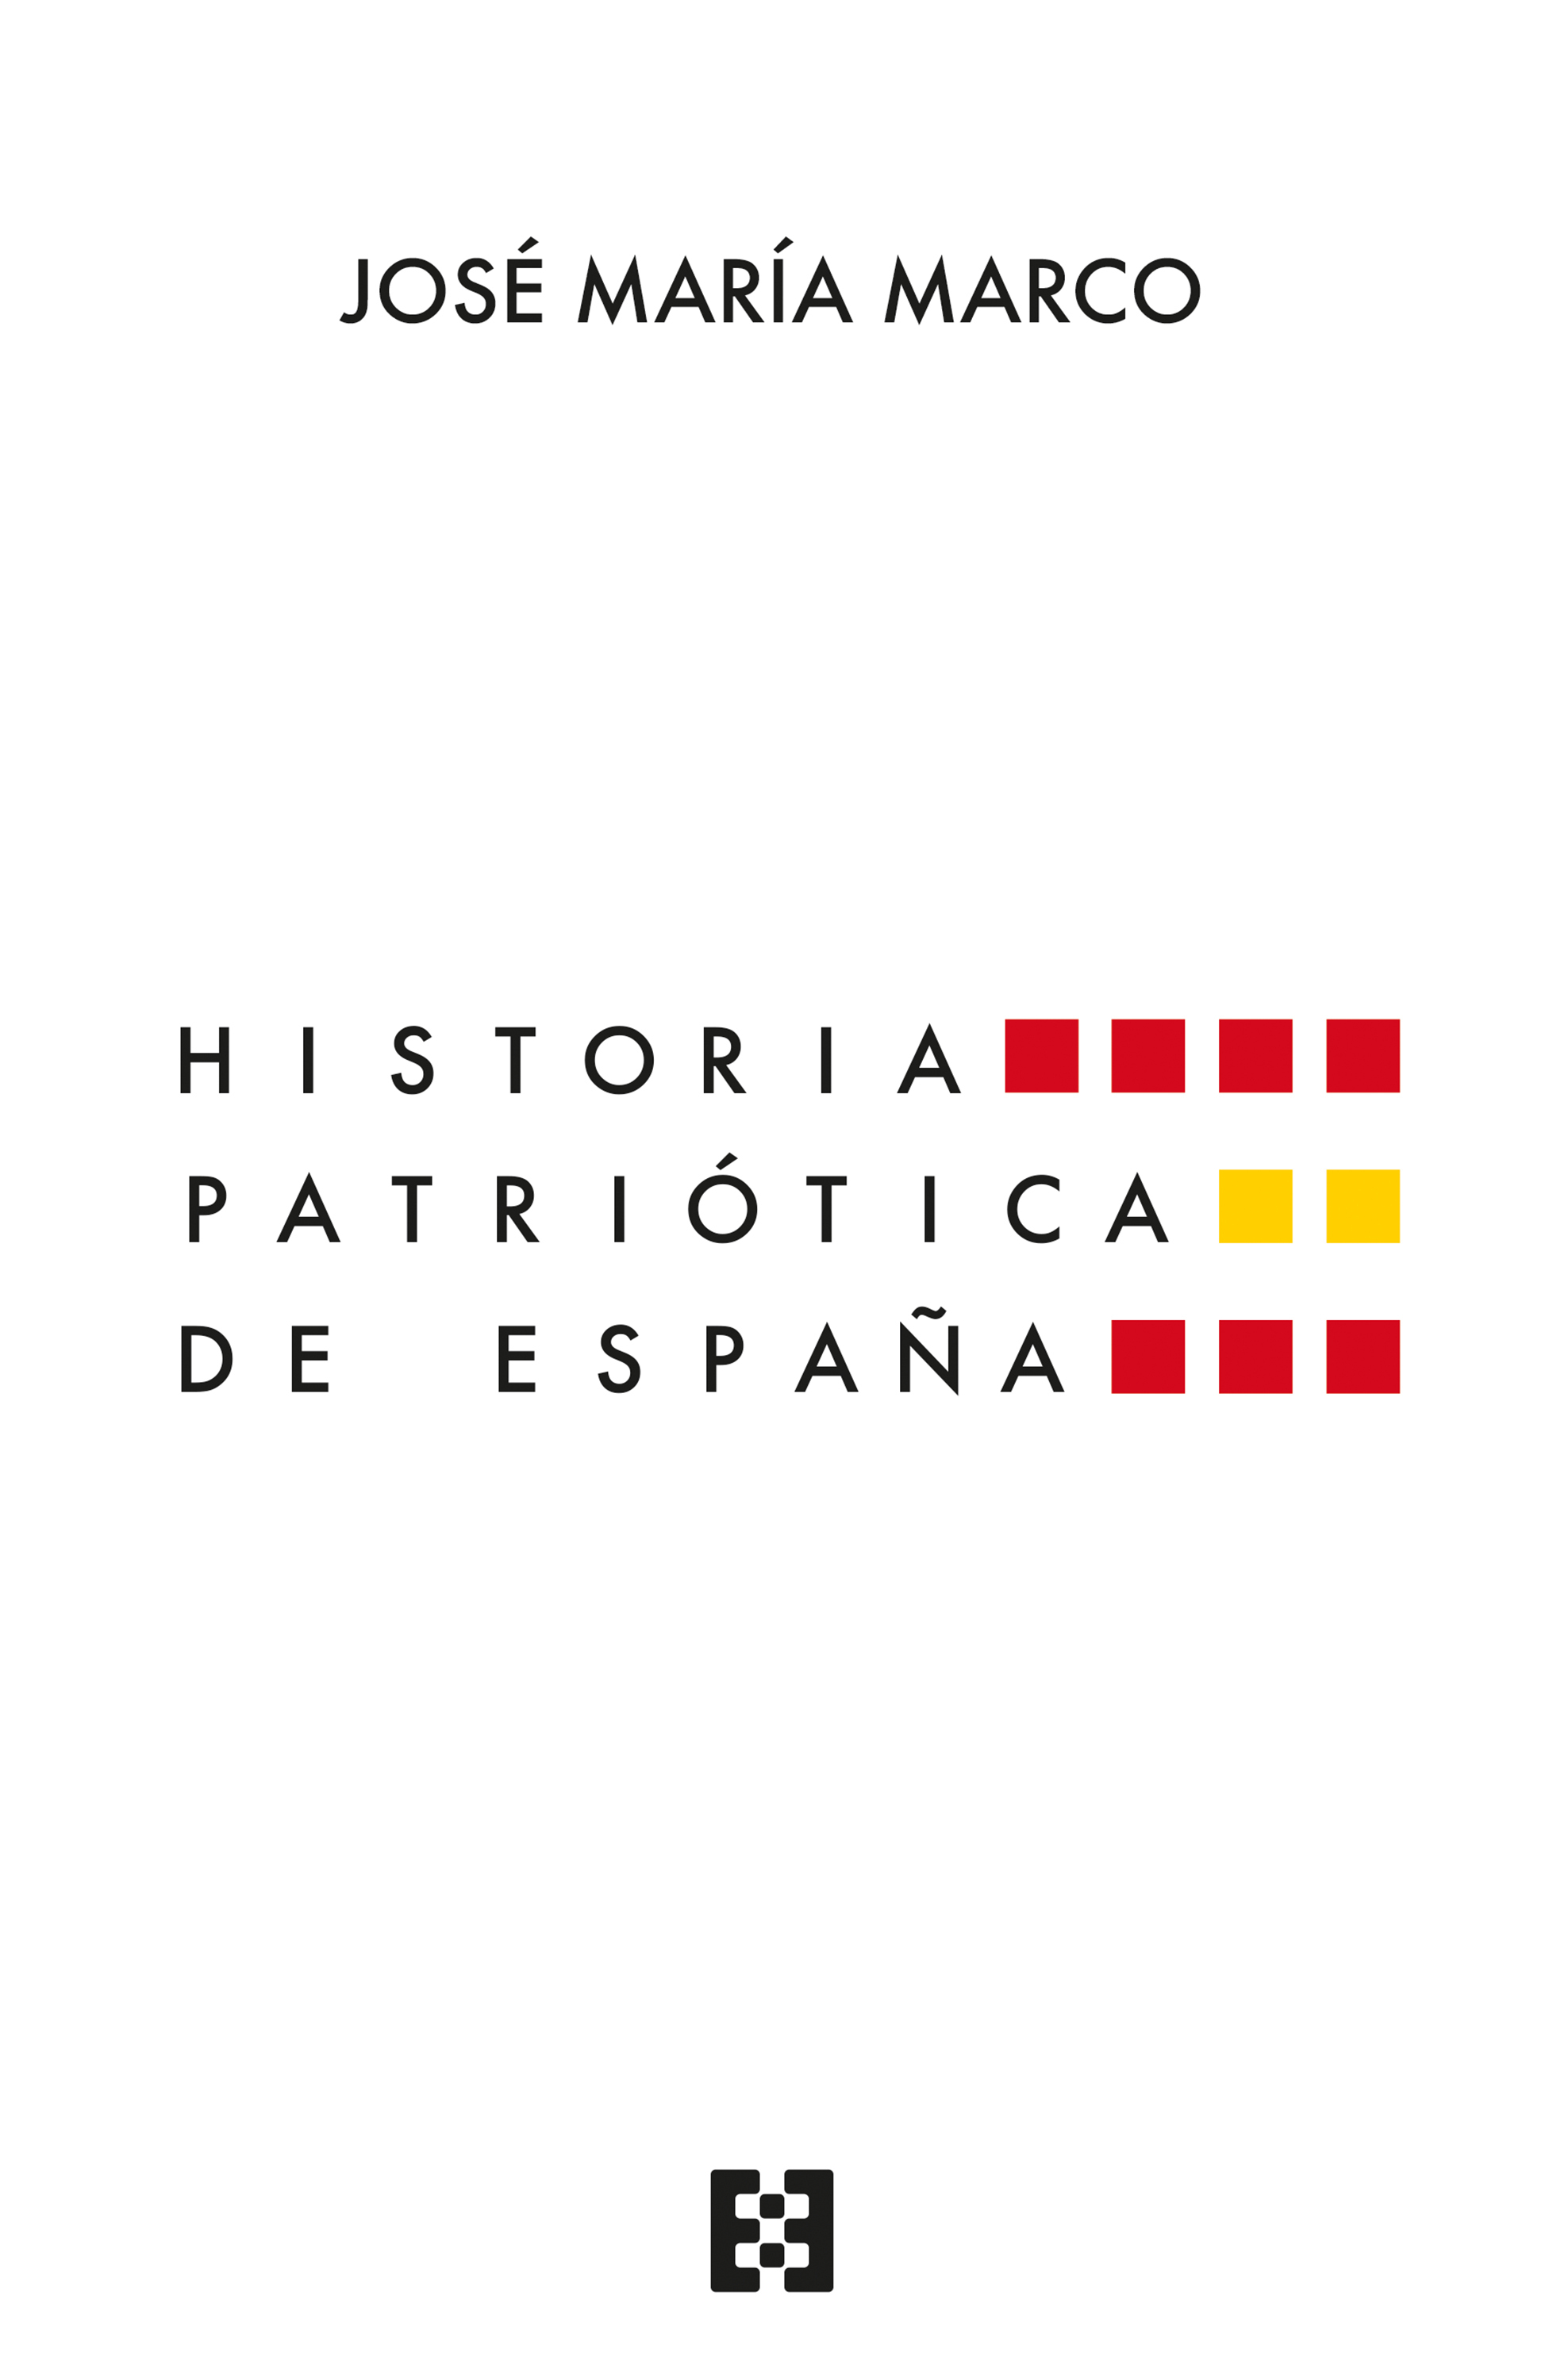 HISTORIA PATRIOTICA DE ESPAÑA